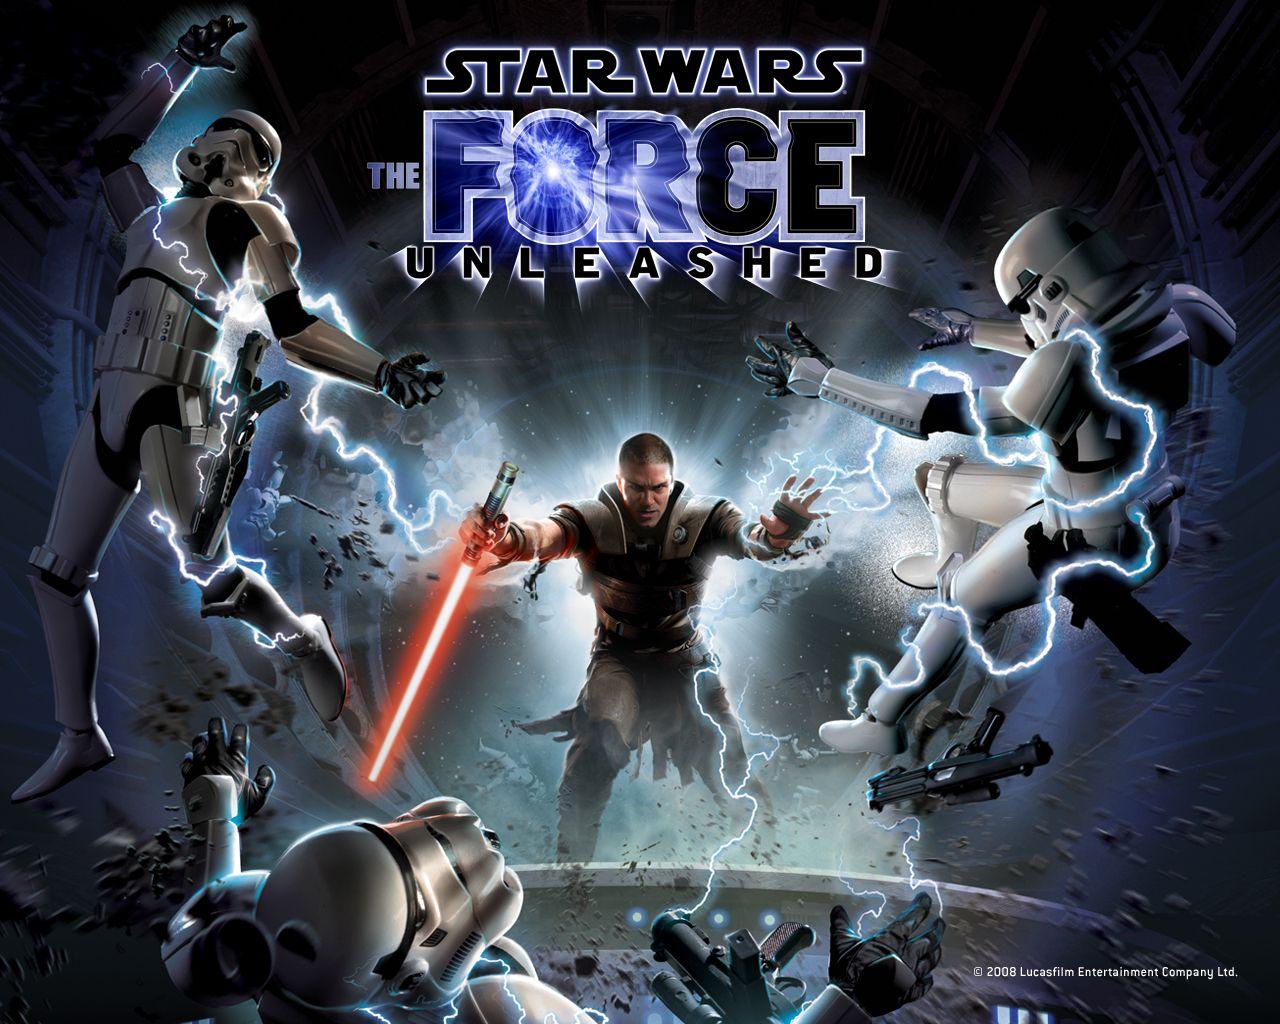 Bakgrundsbilder Star Wars Star Wars The Force Unleashed dataspel spel Datorspel